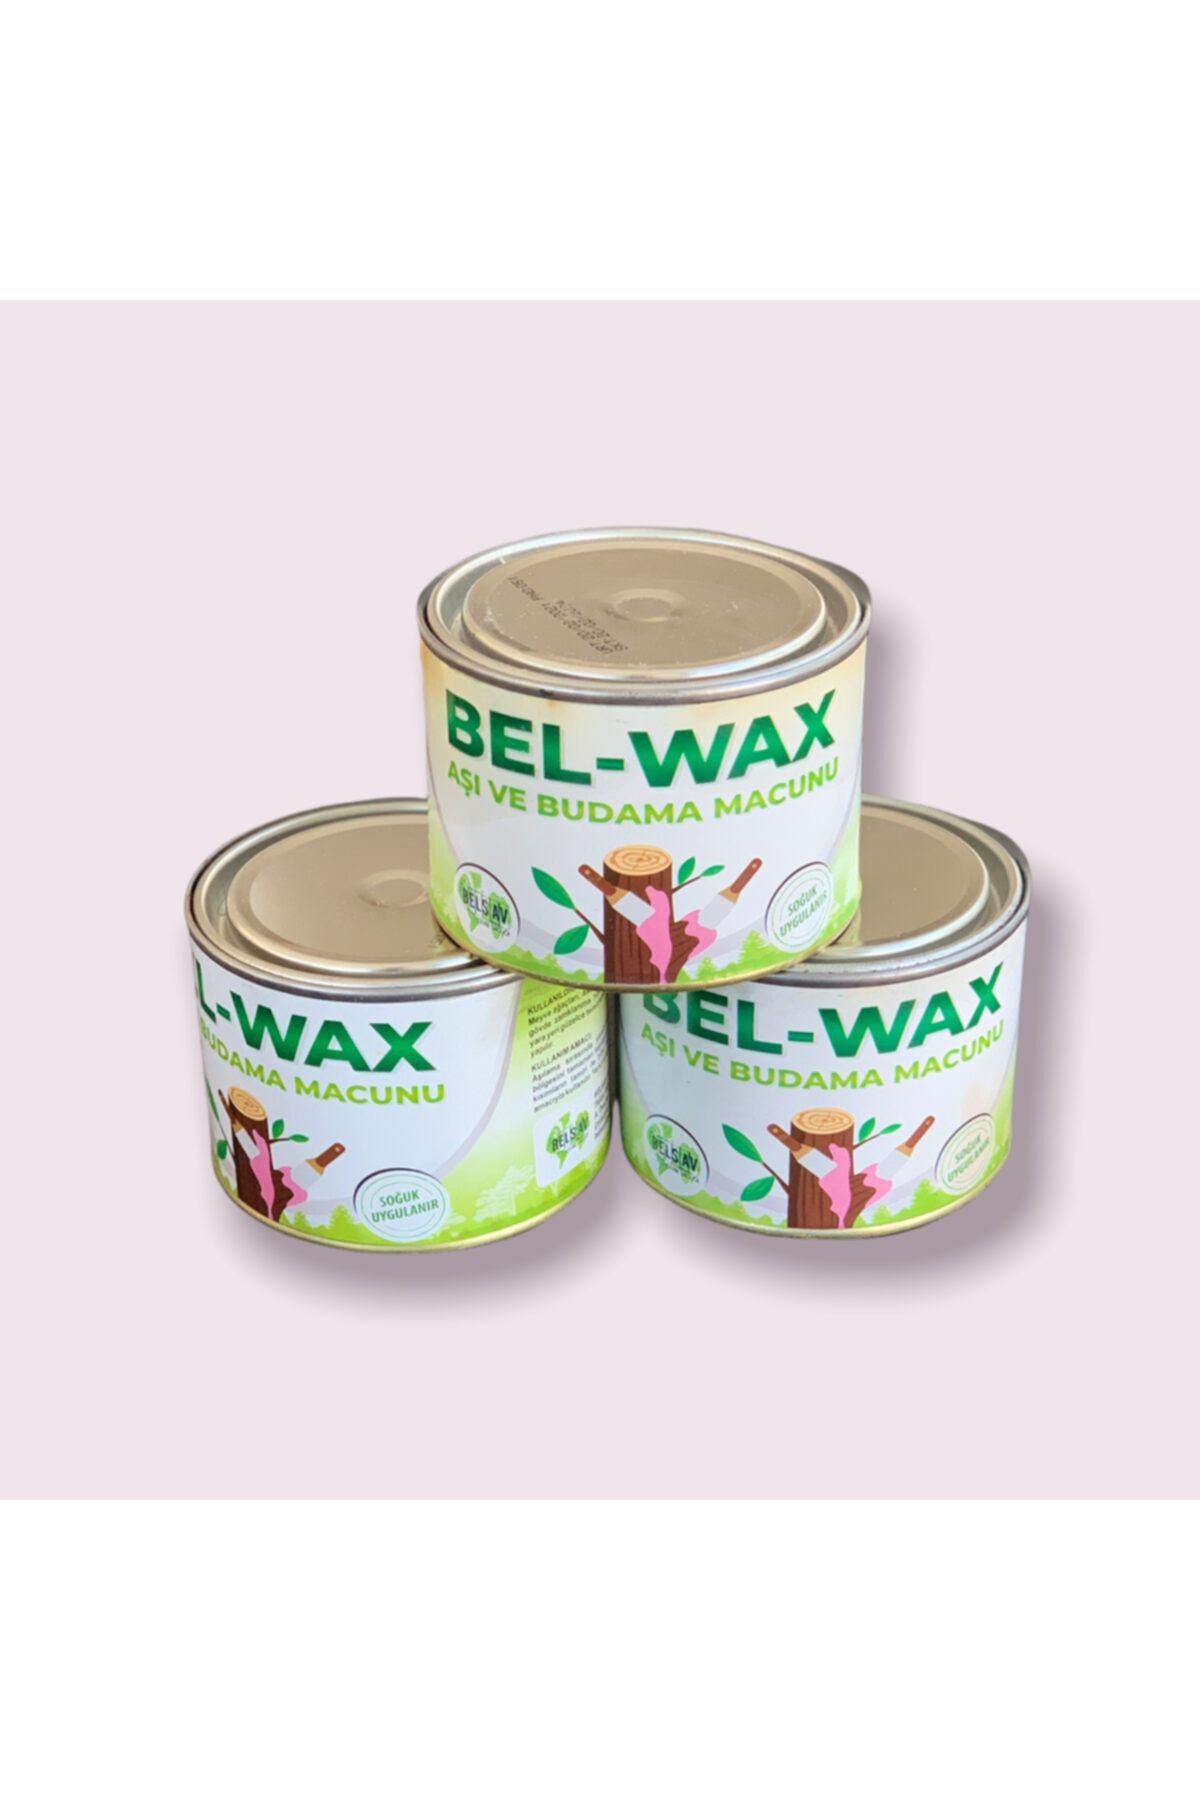 Bul-Max Bel-wax Aşı Ve Budama Macunu 500 Gr/kullanıma Hazır